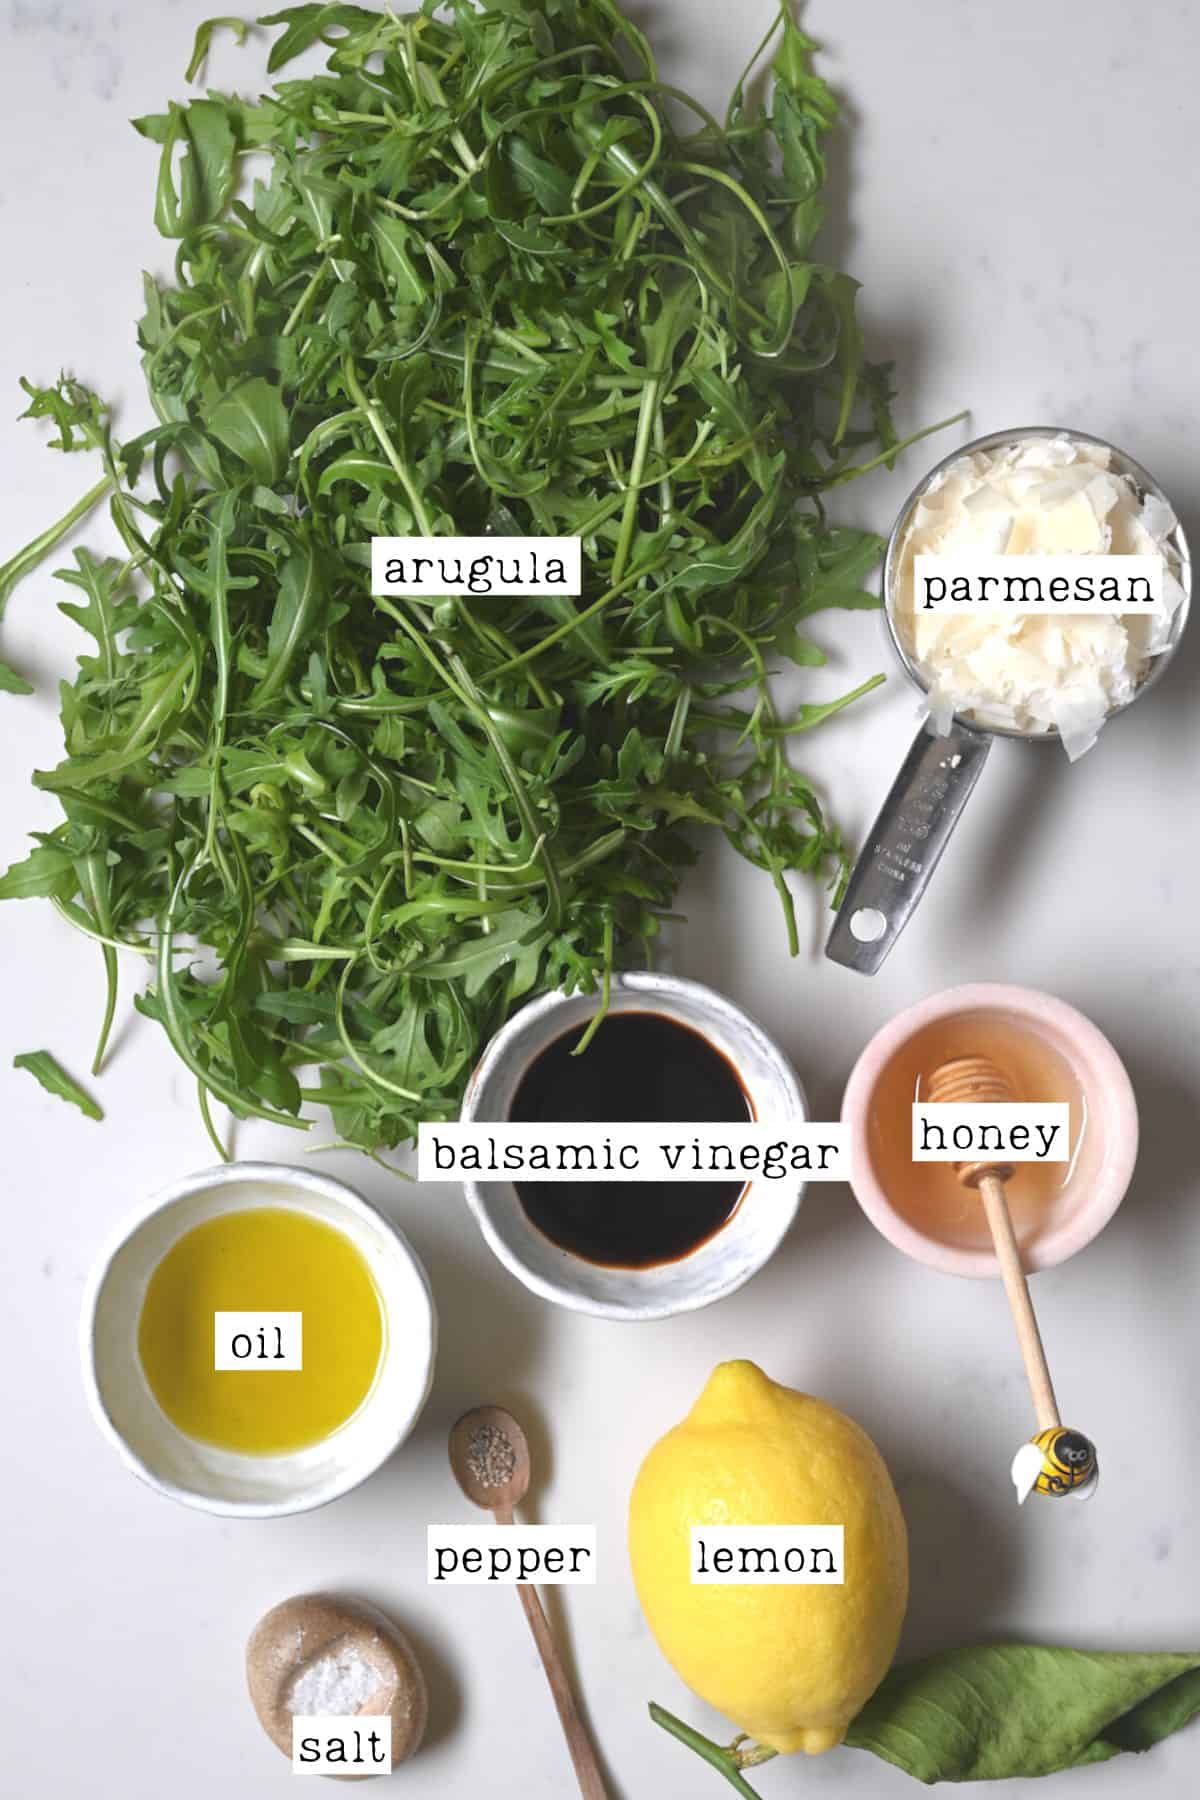 Ingredients for arugula salad